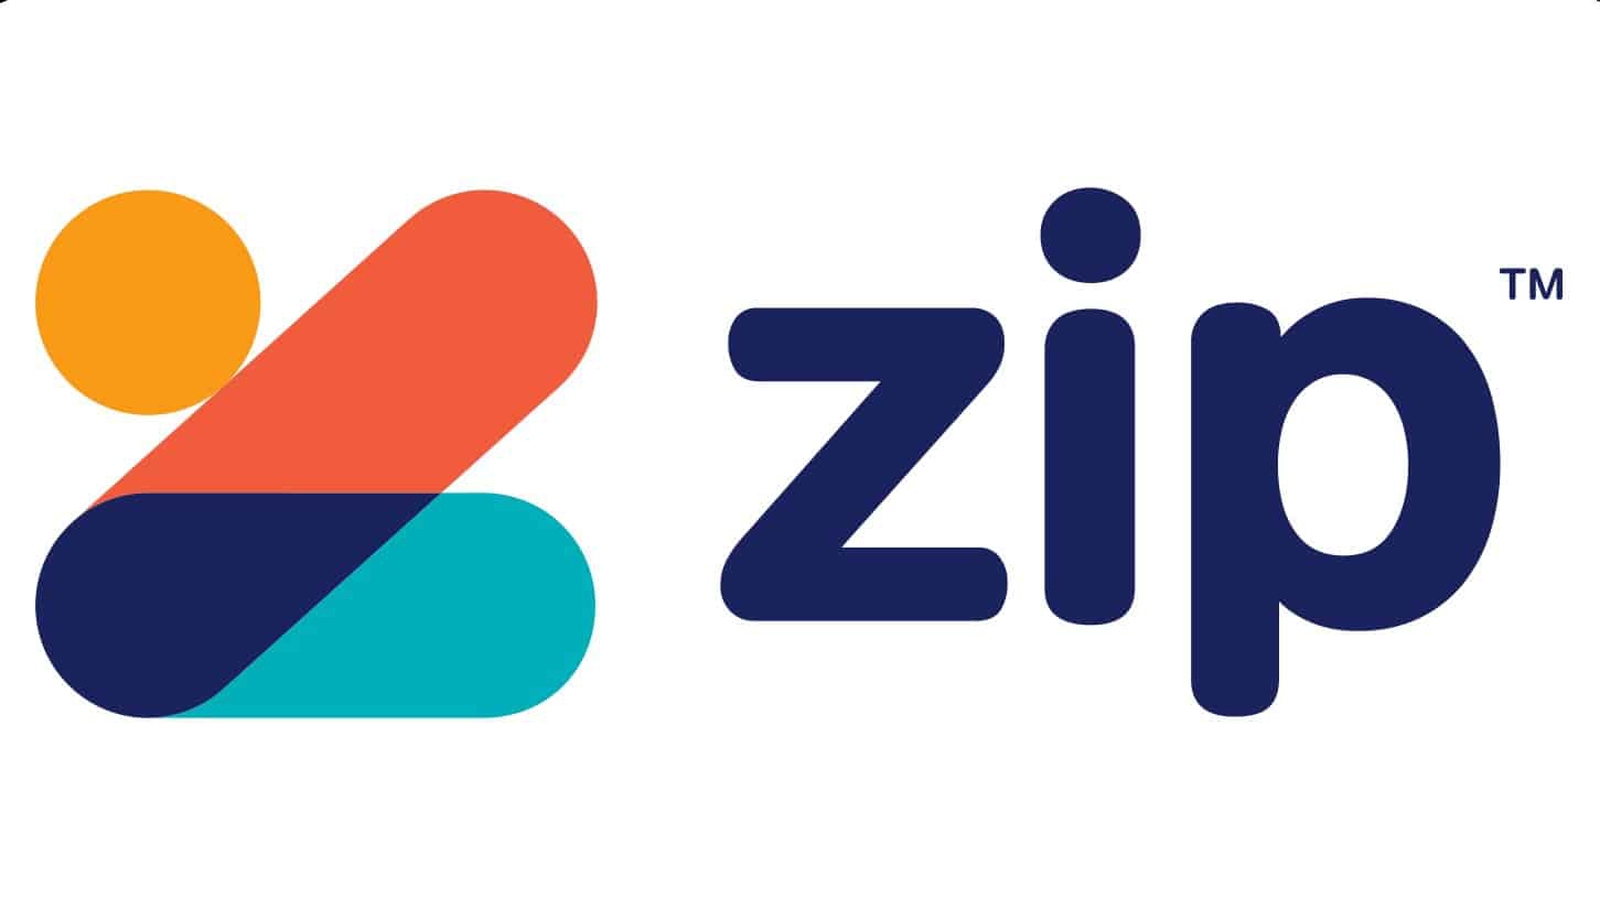 Zip Co